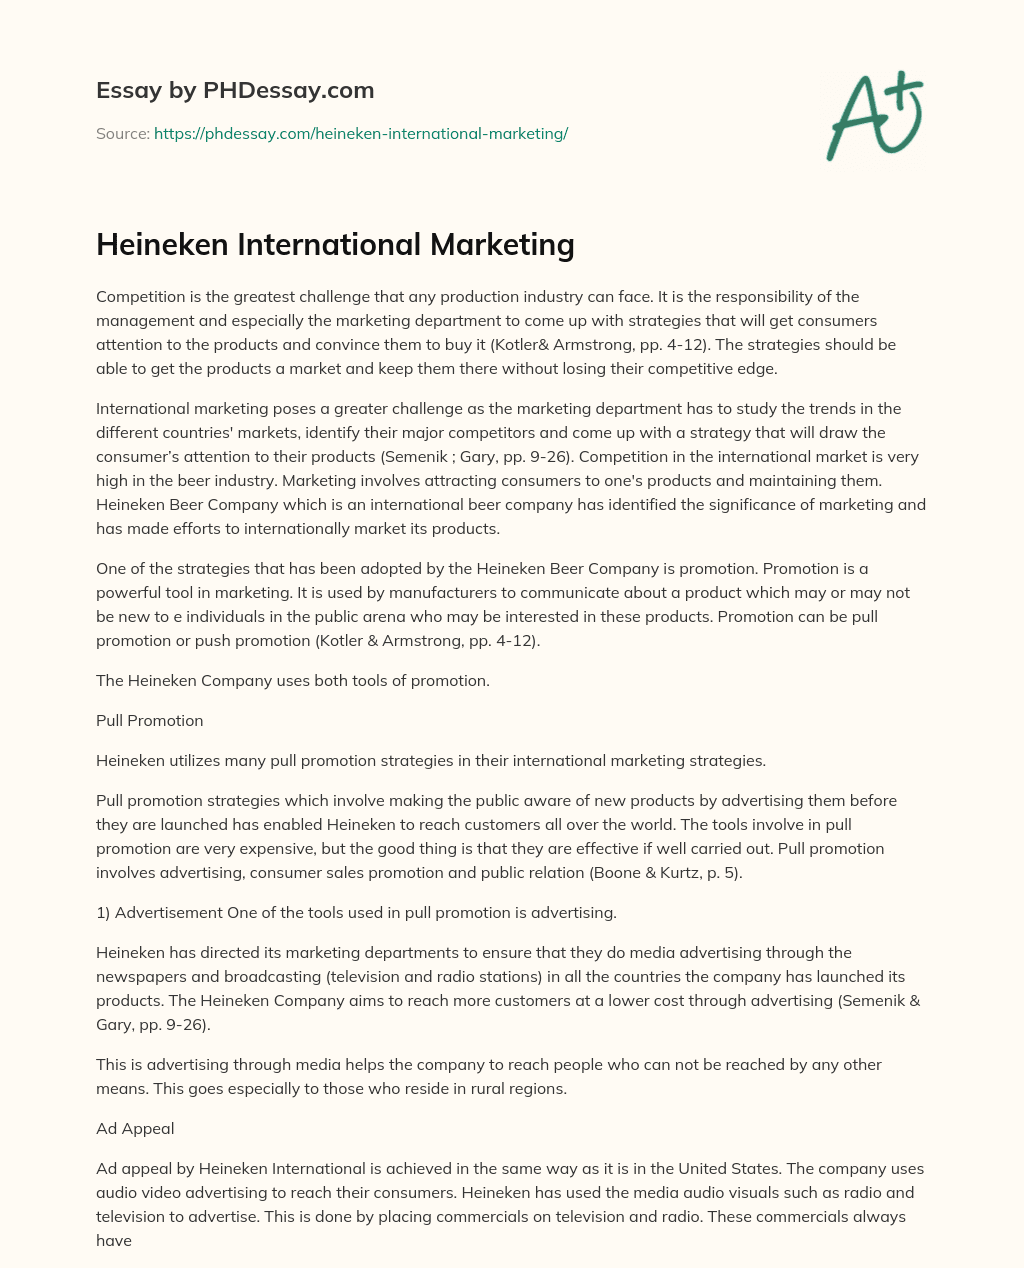 Heineken International Marketing essay